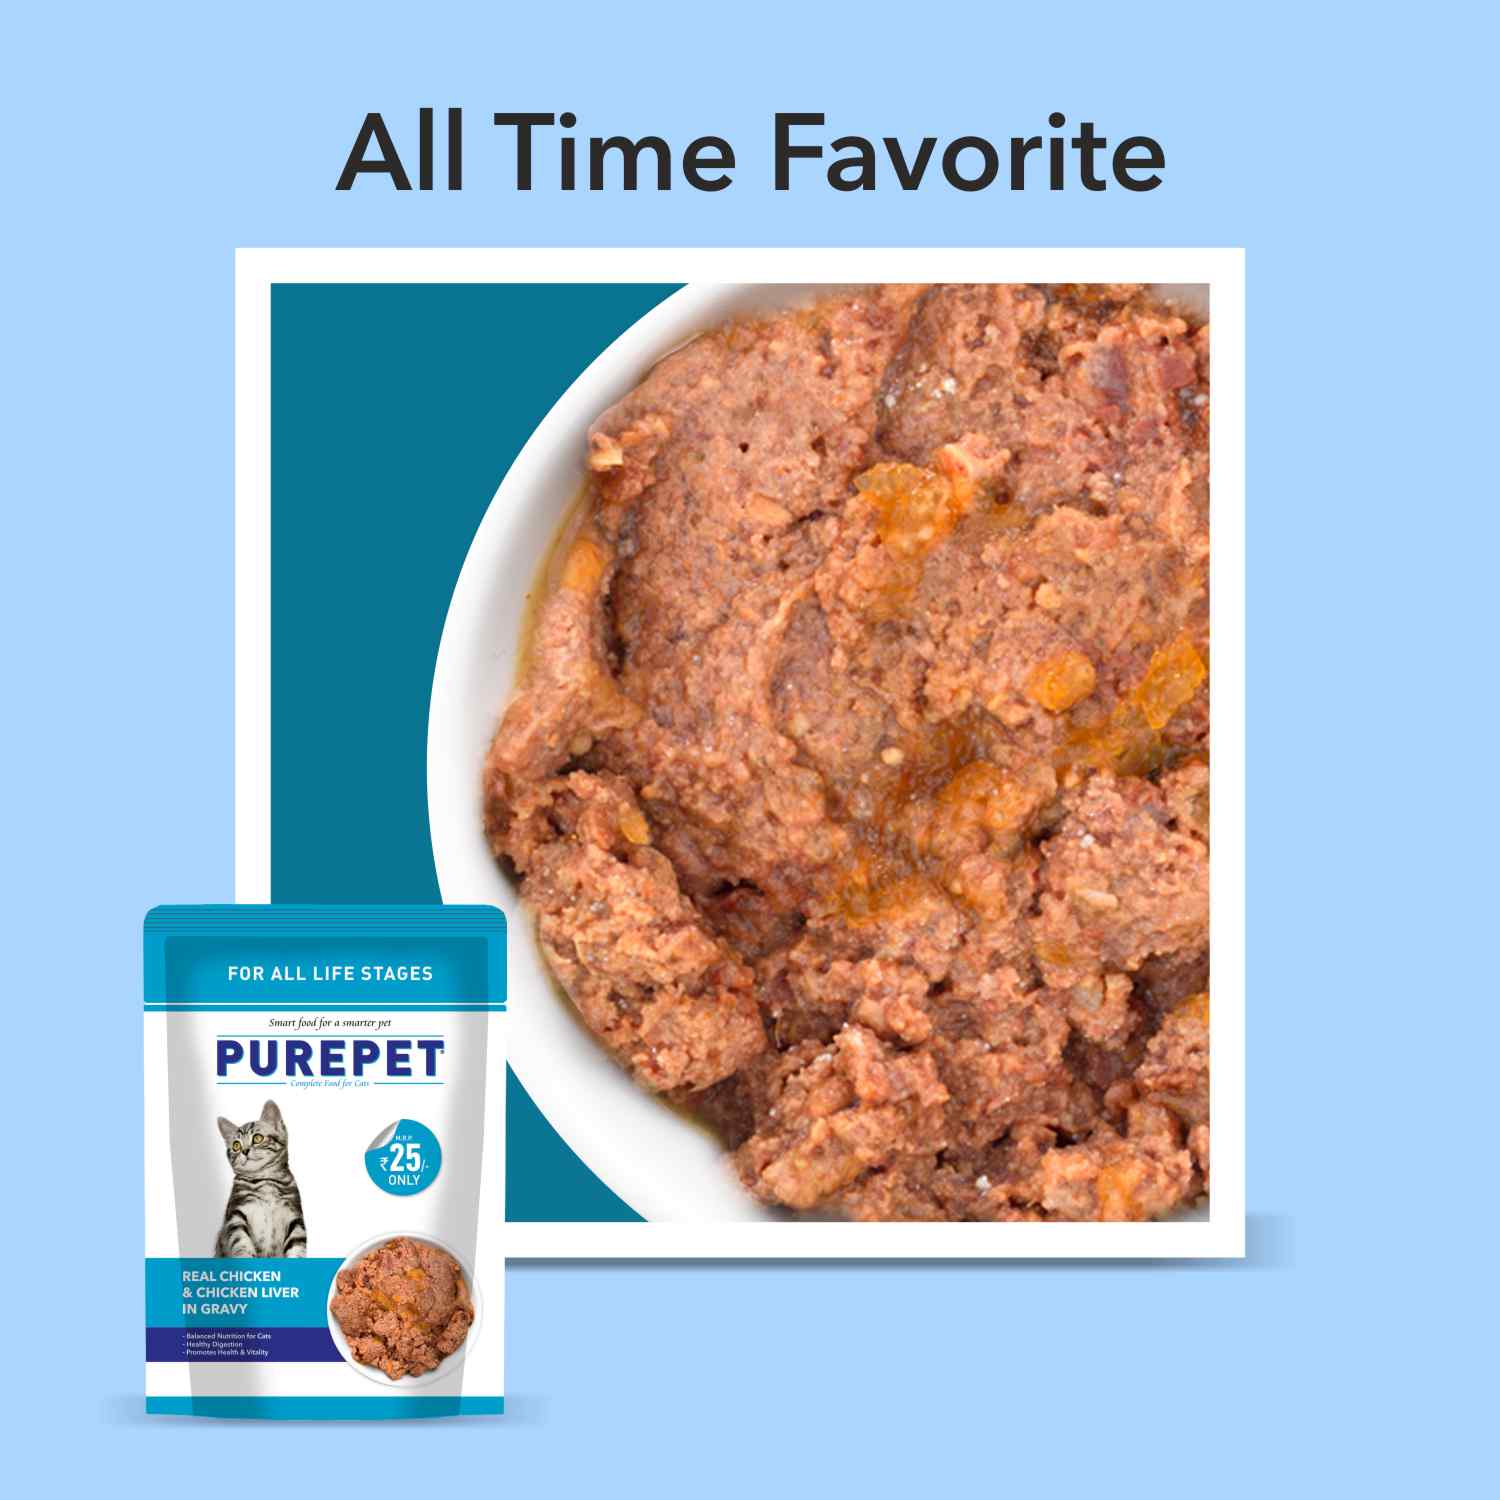 Purepet Real Chicken & Chicken Liver in Gravy Wet Cat Food